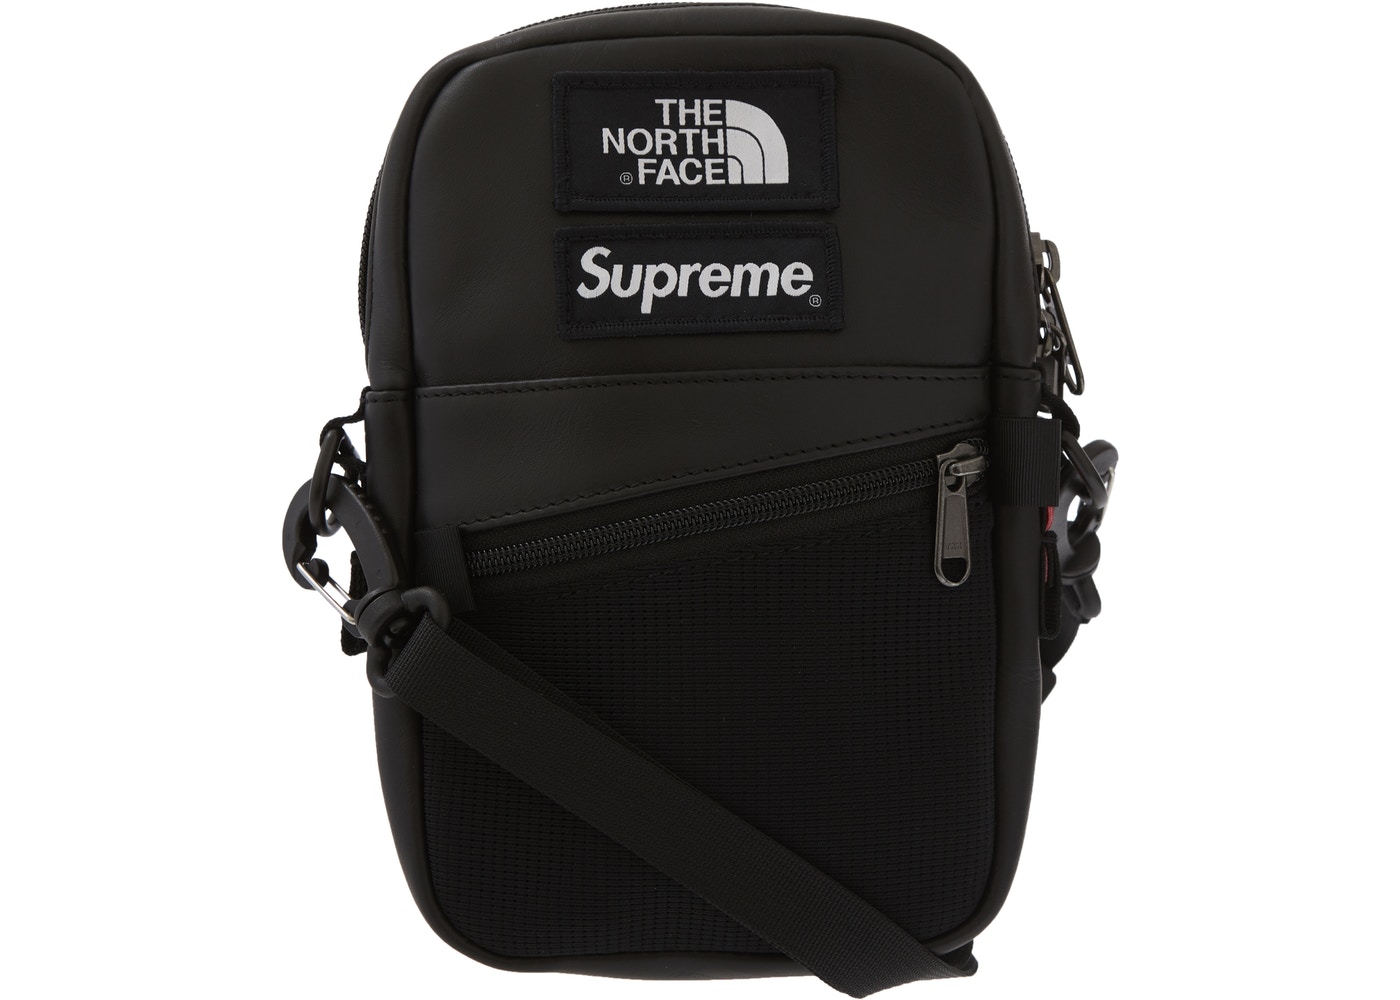 Supreme x The North Face shoulder bag